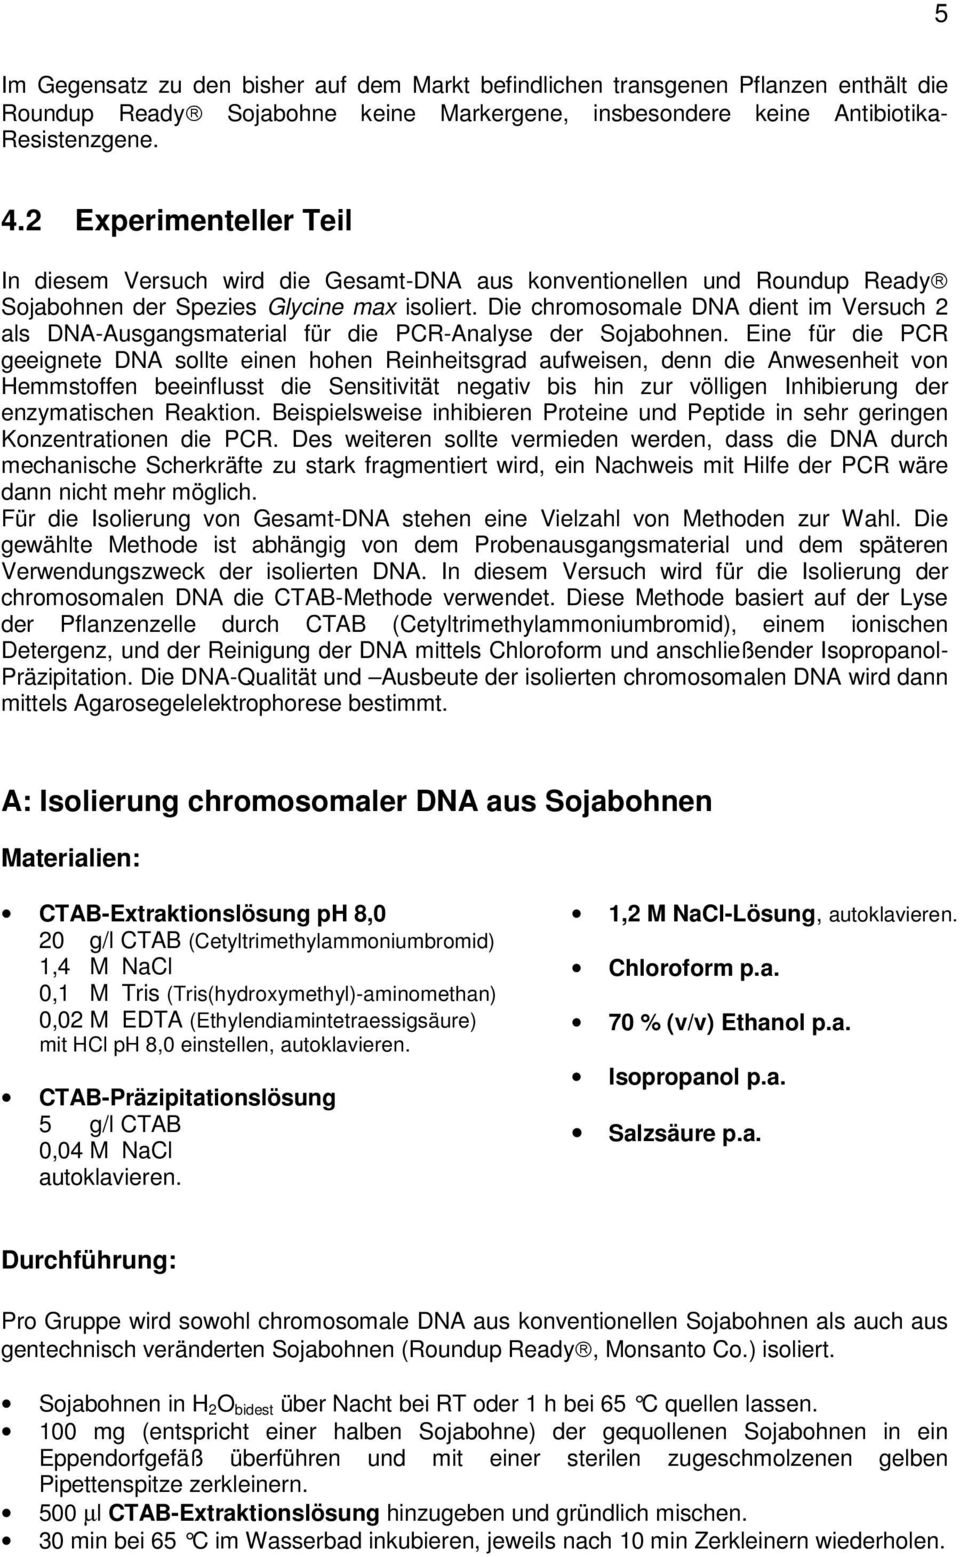 Die chromosomale DNA dient im Versuch 2 als DNA-Ausgangsmaterial für die PCR-Analyse der Sojabohnen.